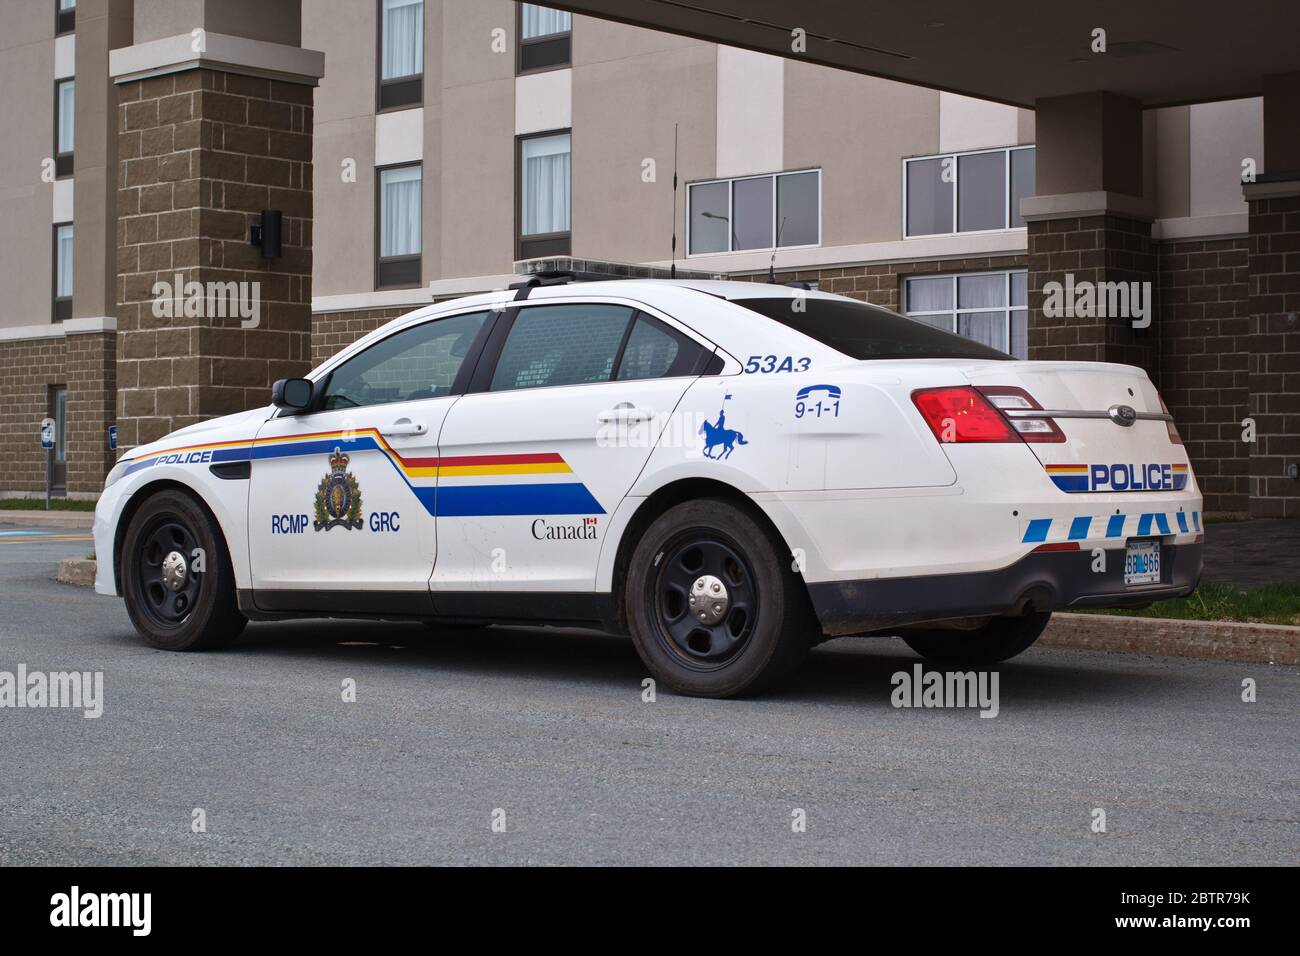 Truro, Kanada - 27. Mai 2020: Royal Canadian Mounted Police oder RCMP Cruiser. Die RCMP ist Kanadas Bundes- und nationale Polizeibehörde. Stockfoto